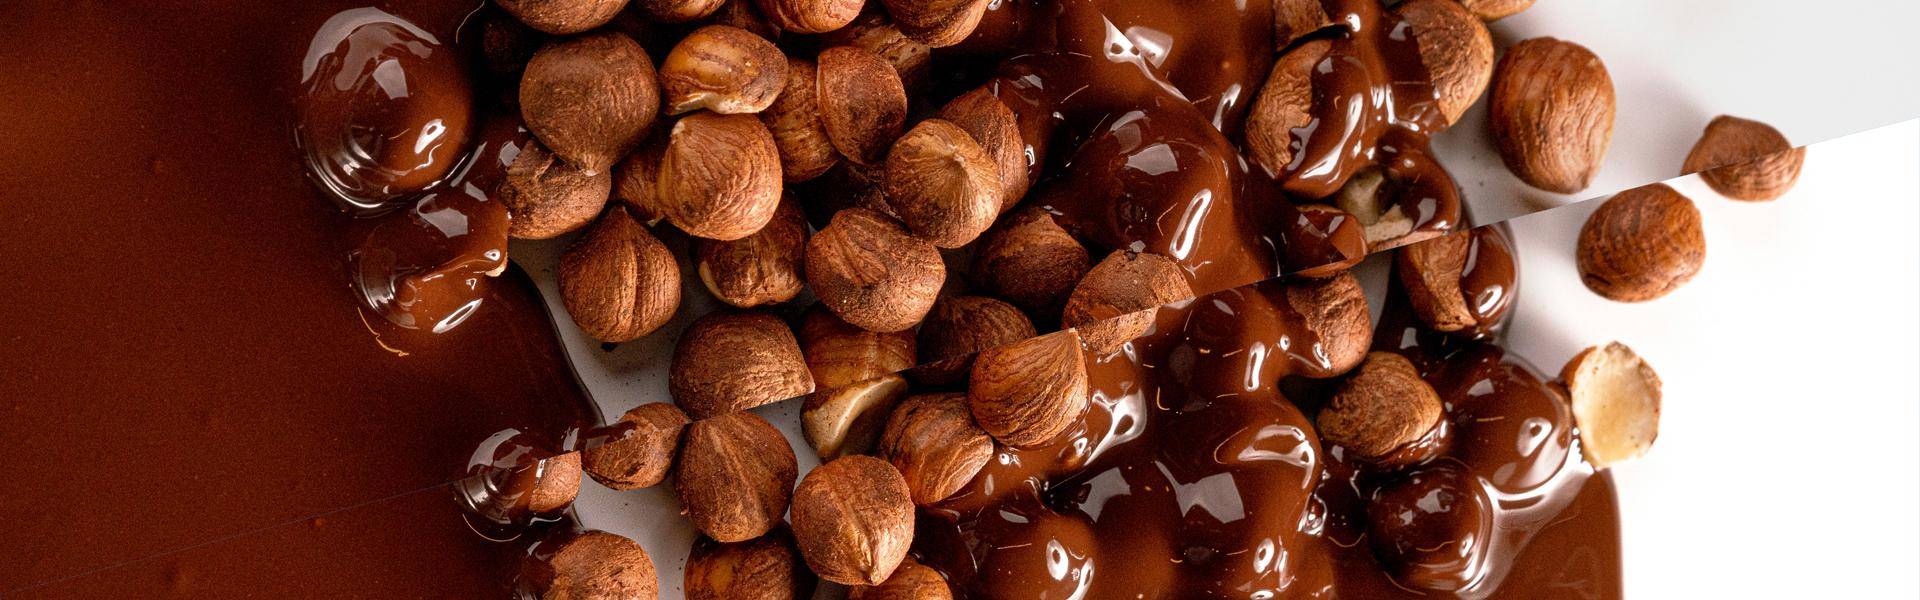 hazelnuts with dark chocolate